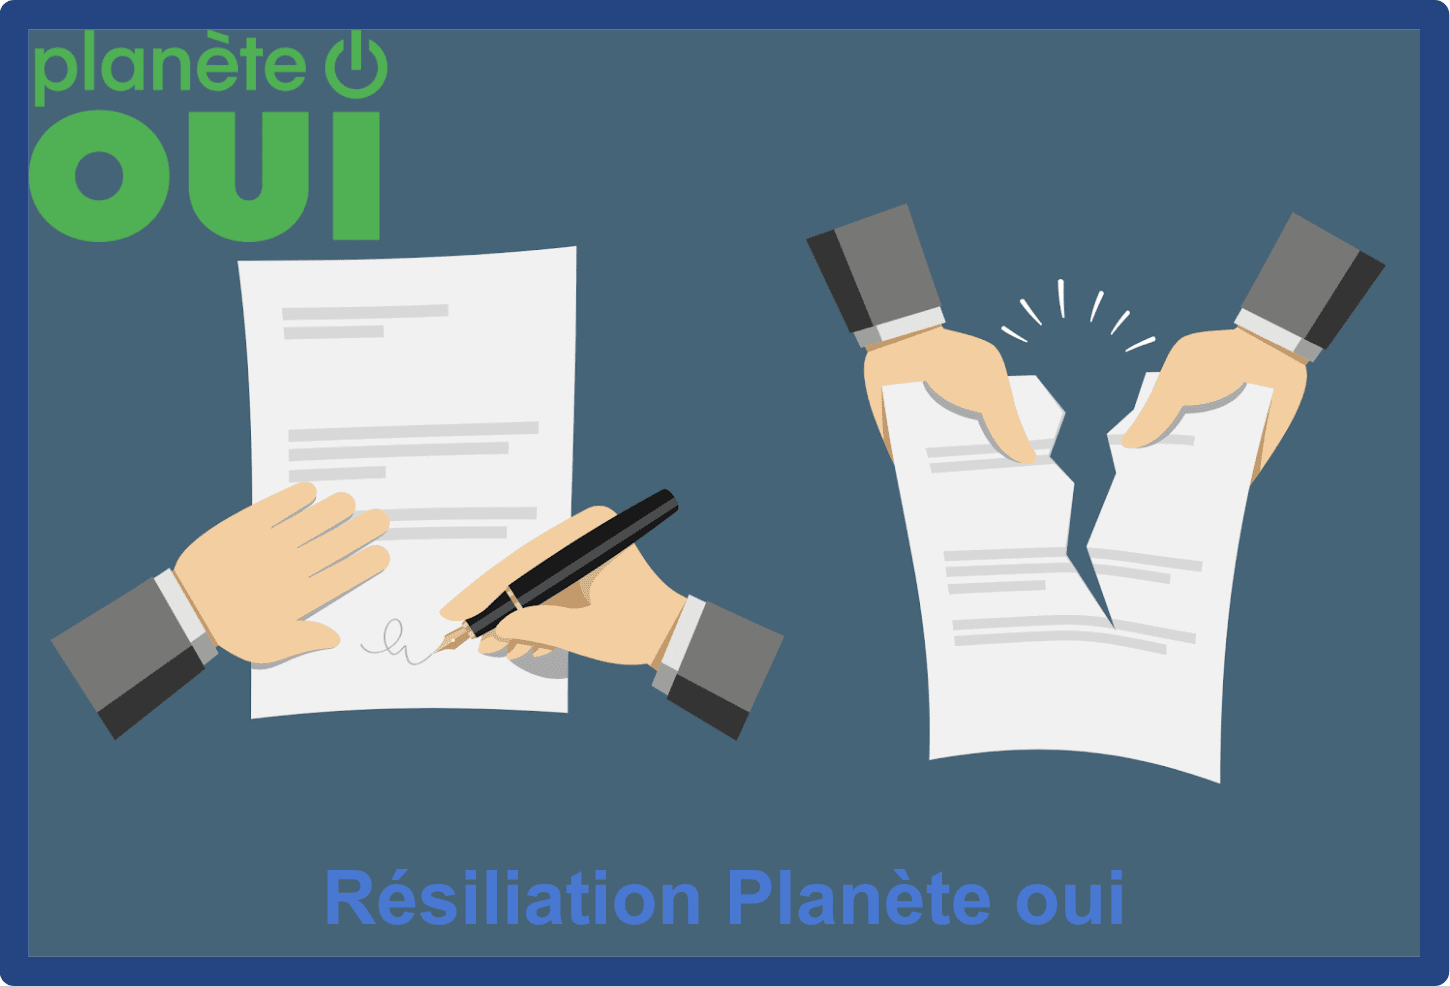 resiliation planete oui